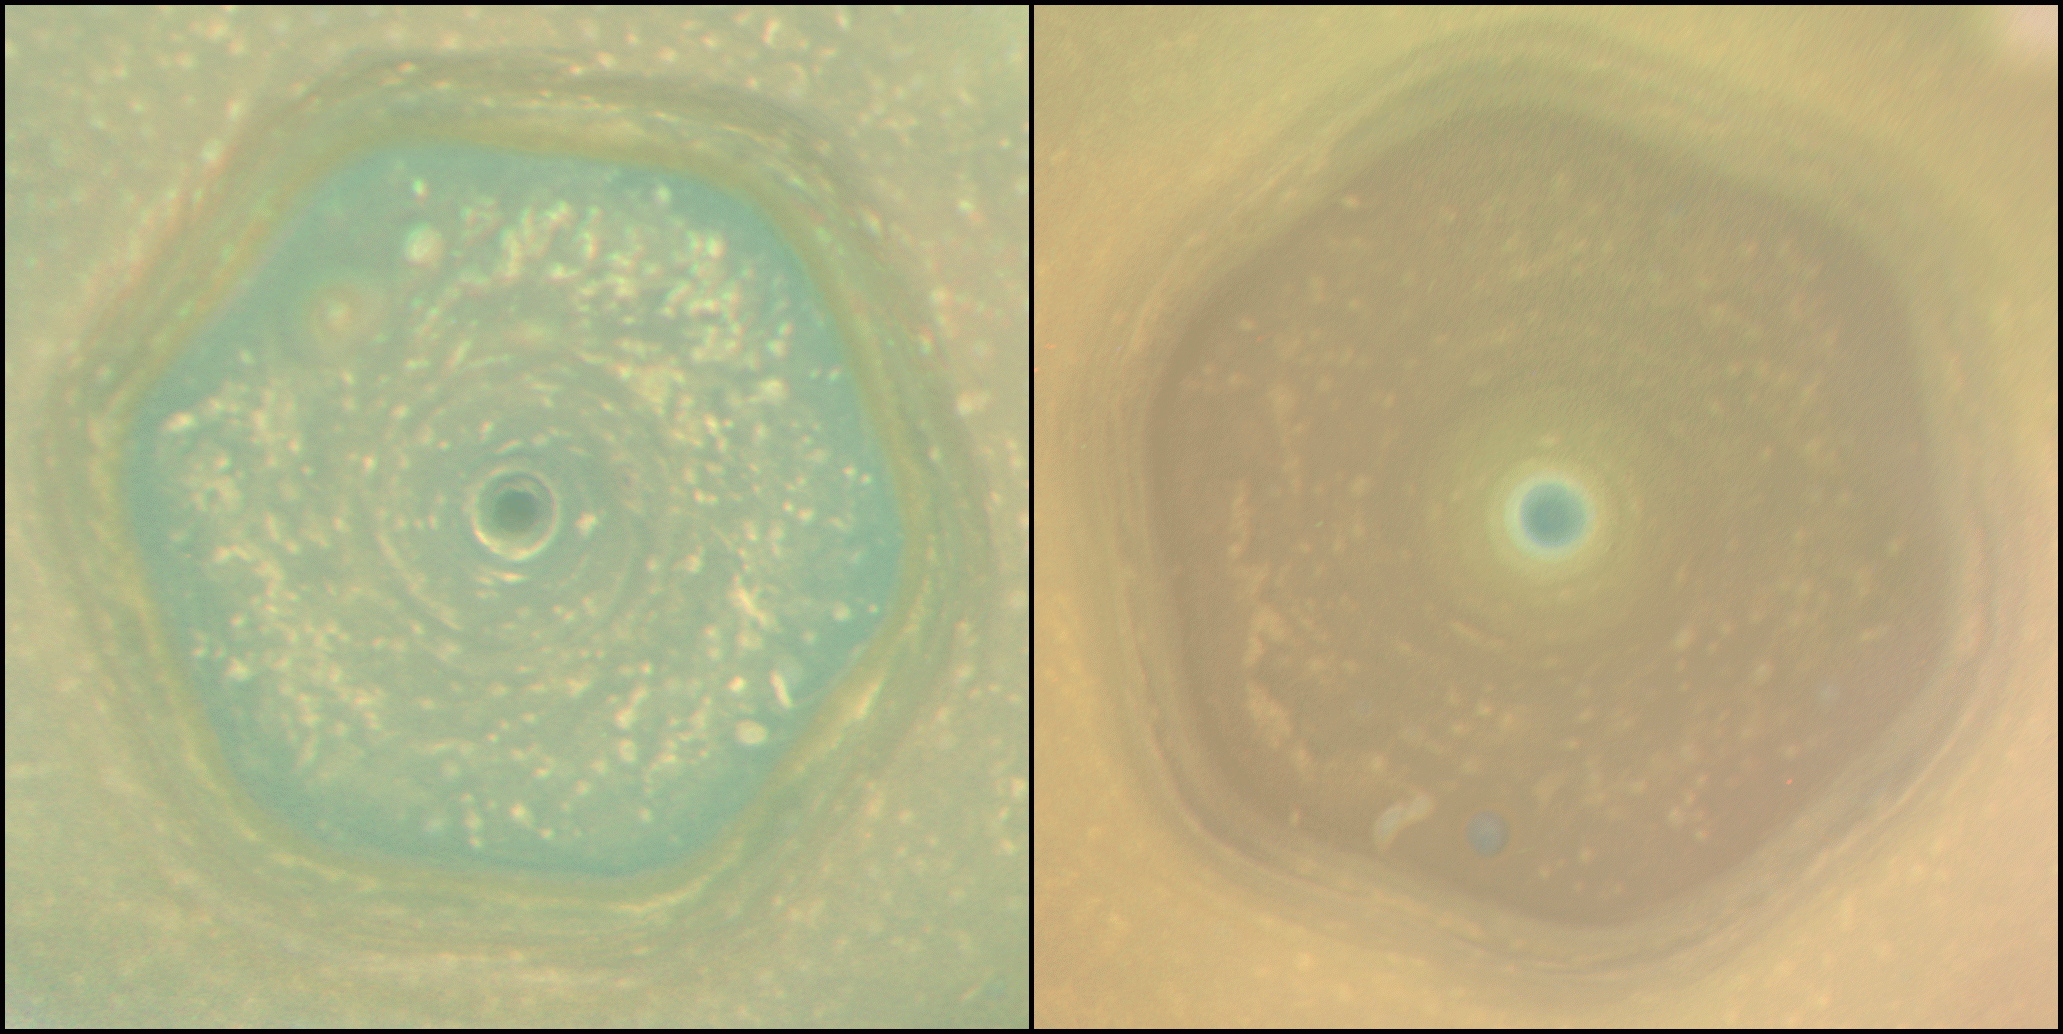 Аппарат «Кассини» получил фото Сатурна в день солнцестояния